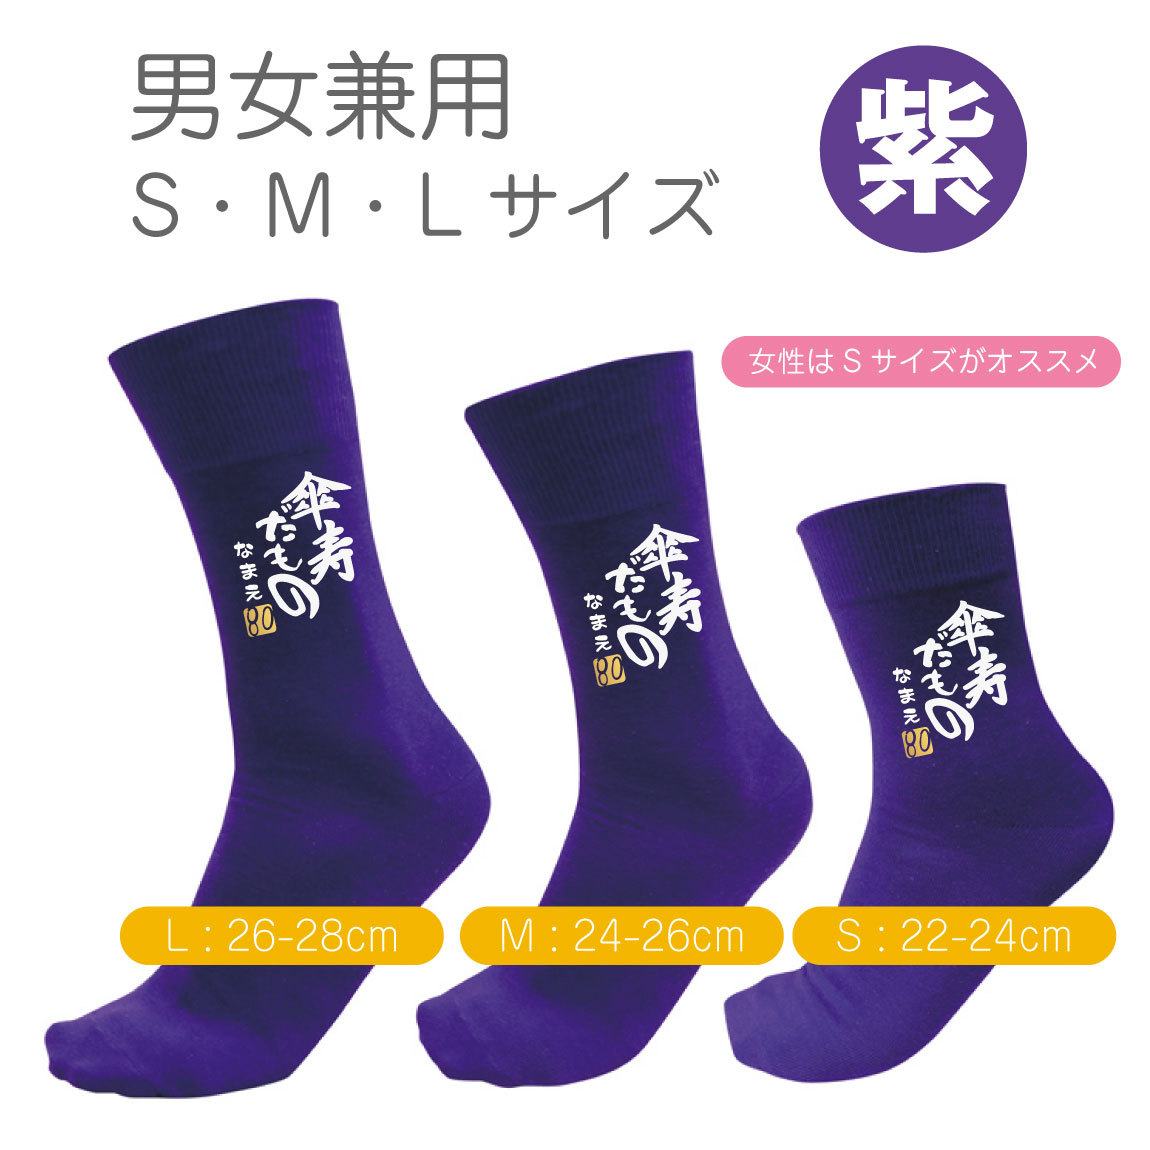 傘寿祝い 父 母 紫 黒 ソックス ( 名入れ 傘寿だもの 靴下・ソックス 選べる2カラー 80 )...